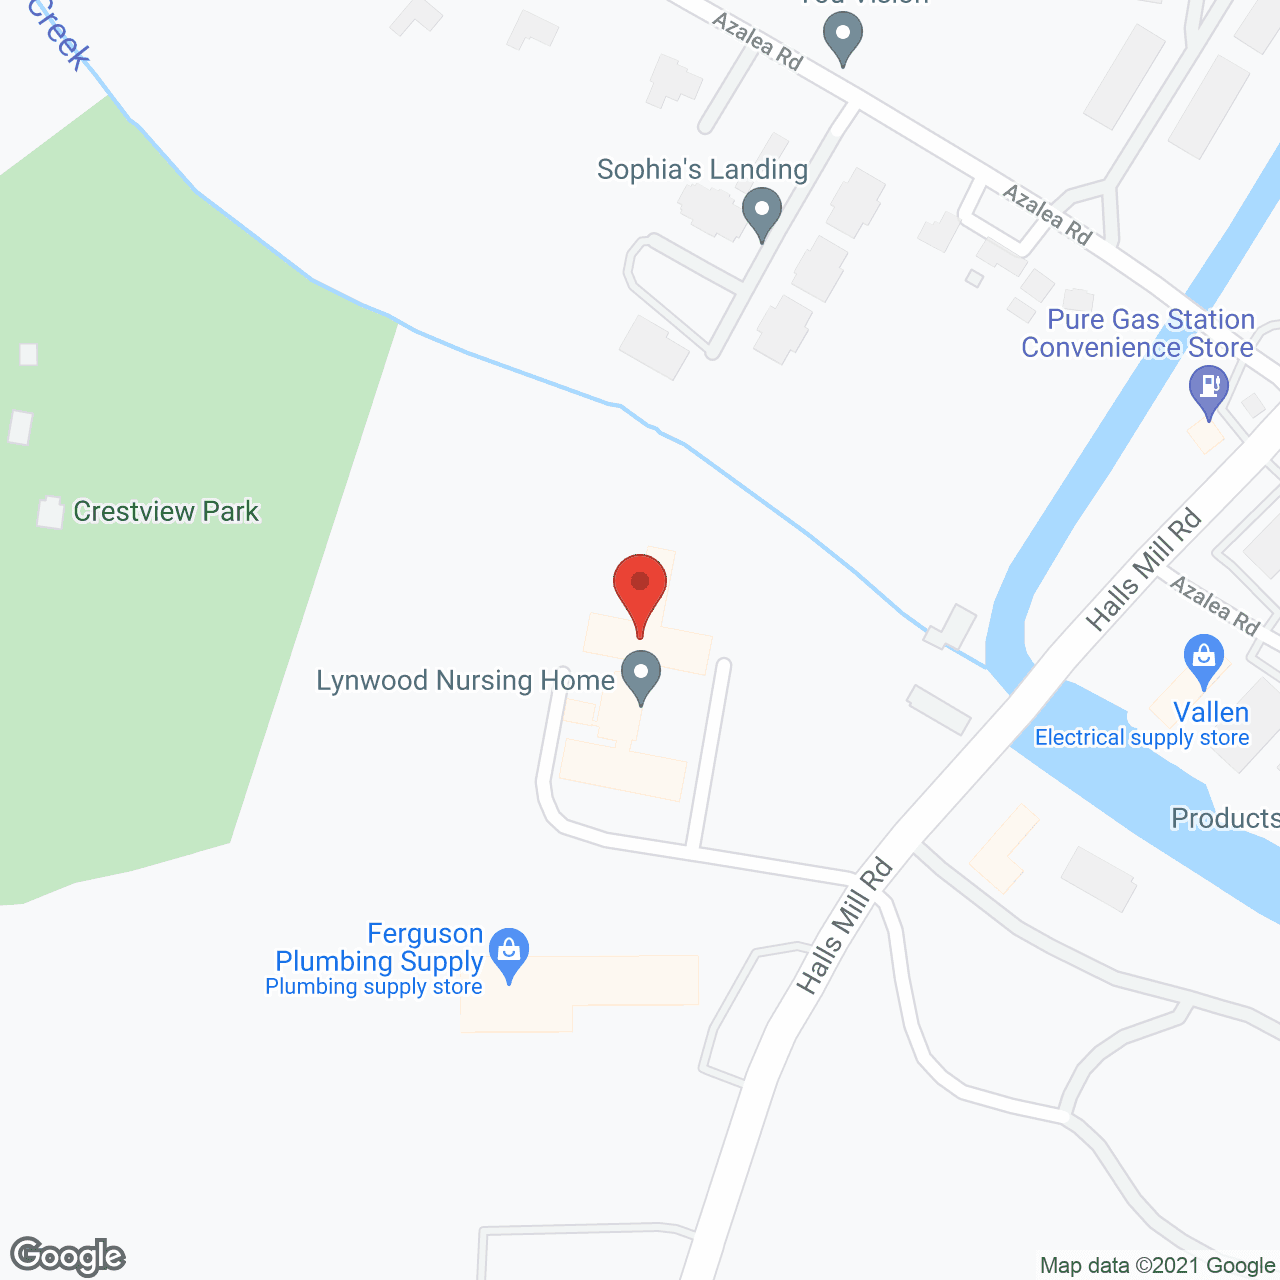 Lynwood Nursing Home in google map